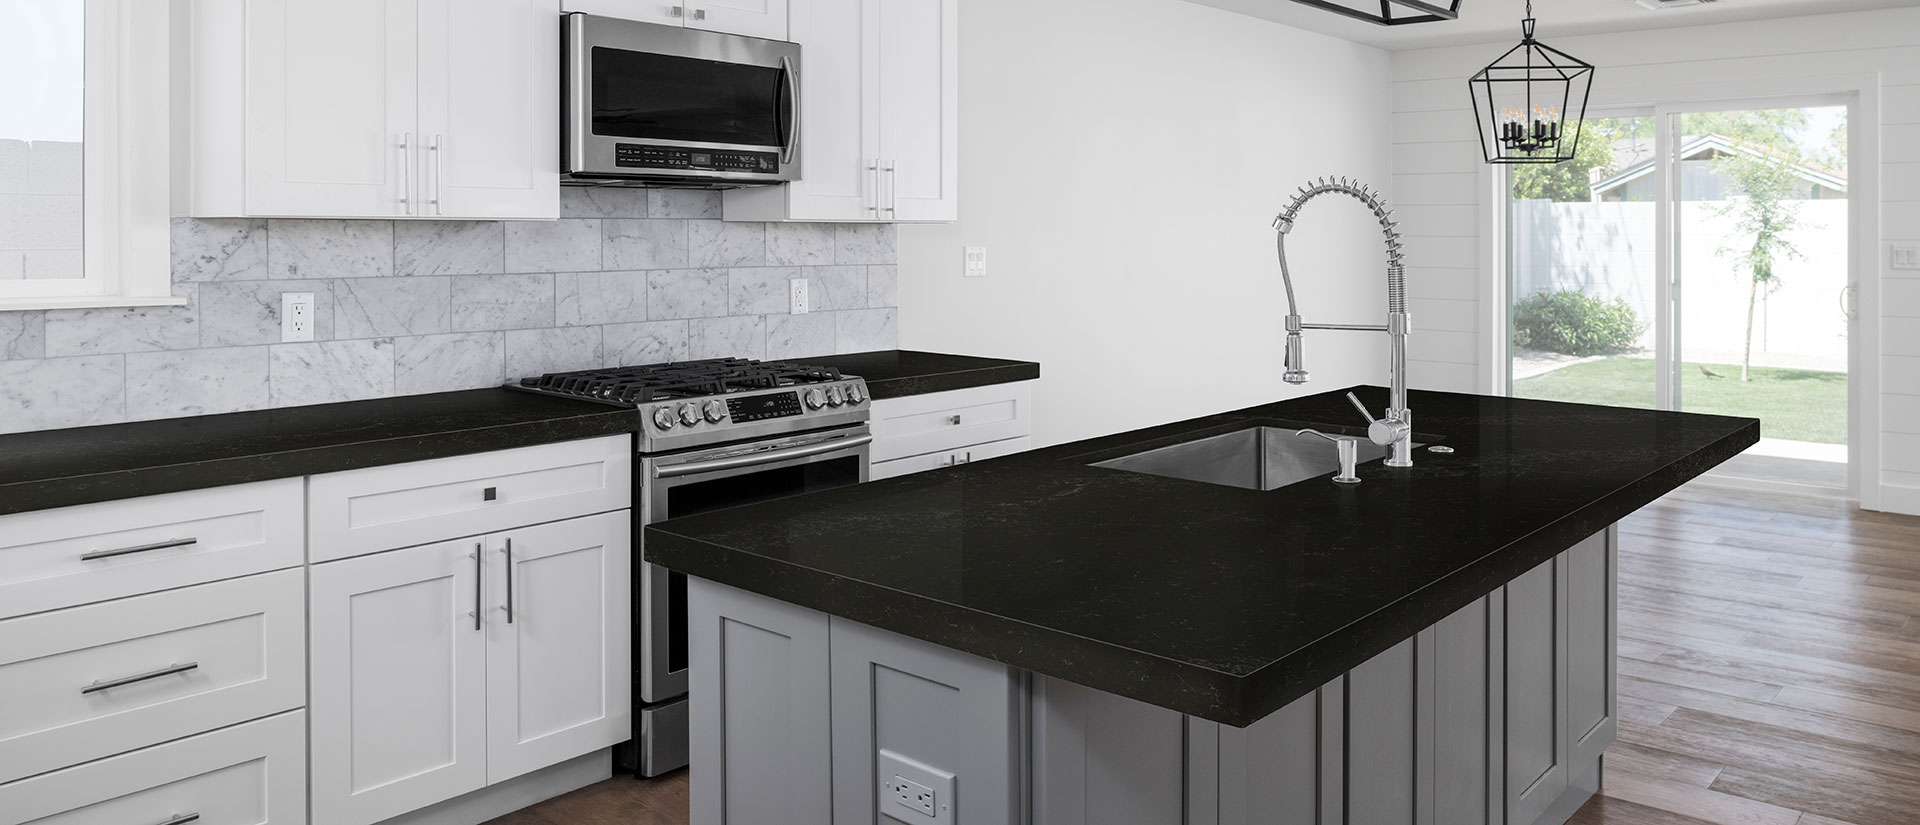 Midnight Corvo Concrete Quartz countertop in a modern kitchen